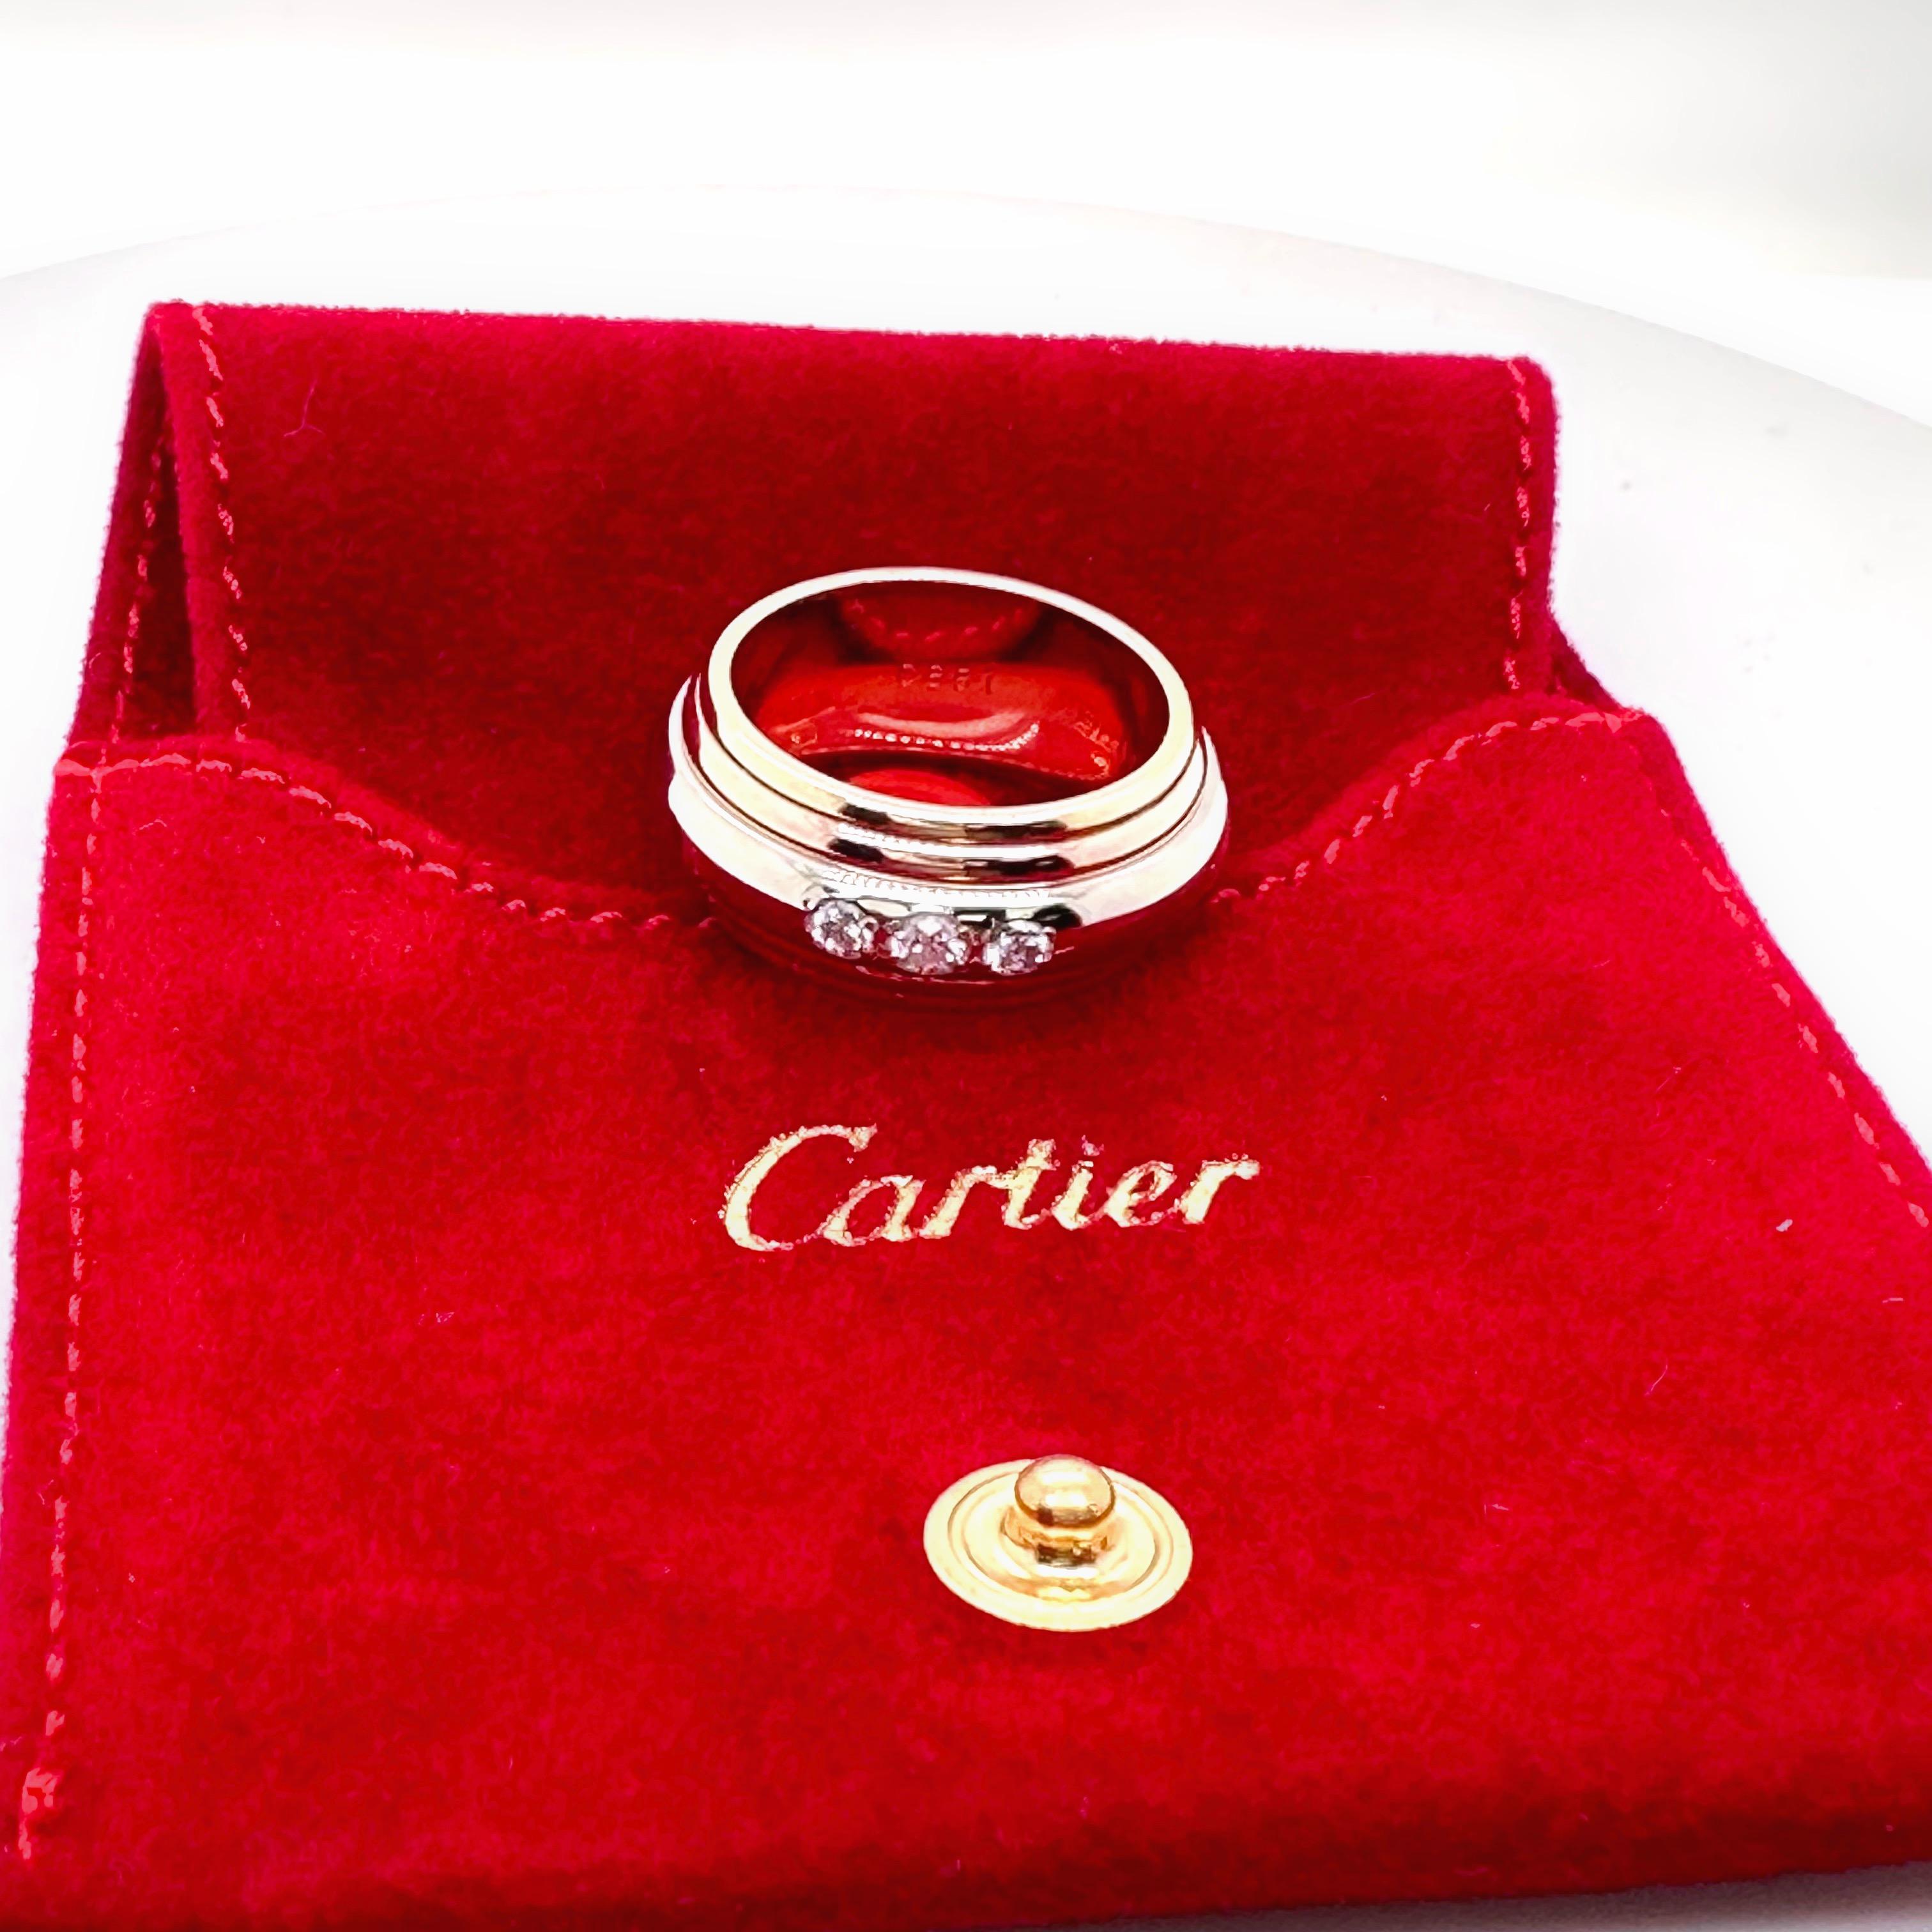 Cartier Collection Satureal Bague en or multicolore avec diamants
Le style :  Bande
Numéro de référence :   B46468
Métal :   Or blanc jaune rose 18kt multi-tons
Taille :  6,5 / 52, 10 mm Largeur
Hallmark :   Cartier 750 986619 52 © CARTIER